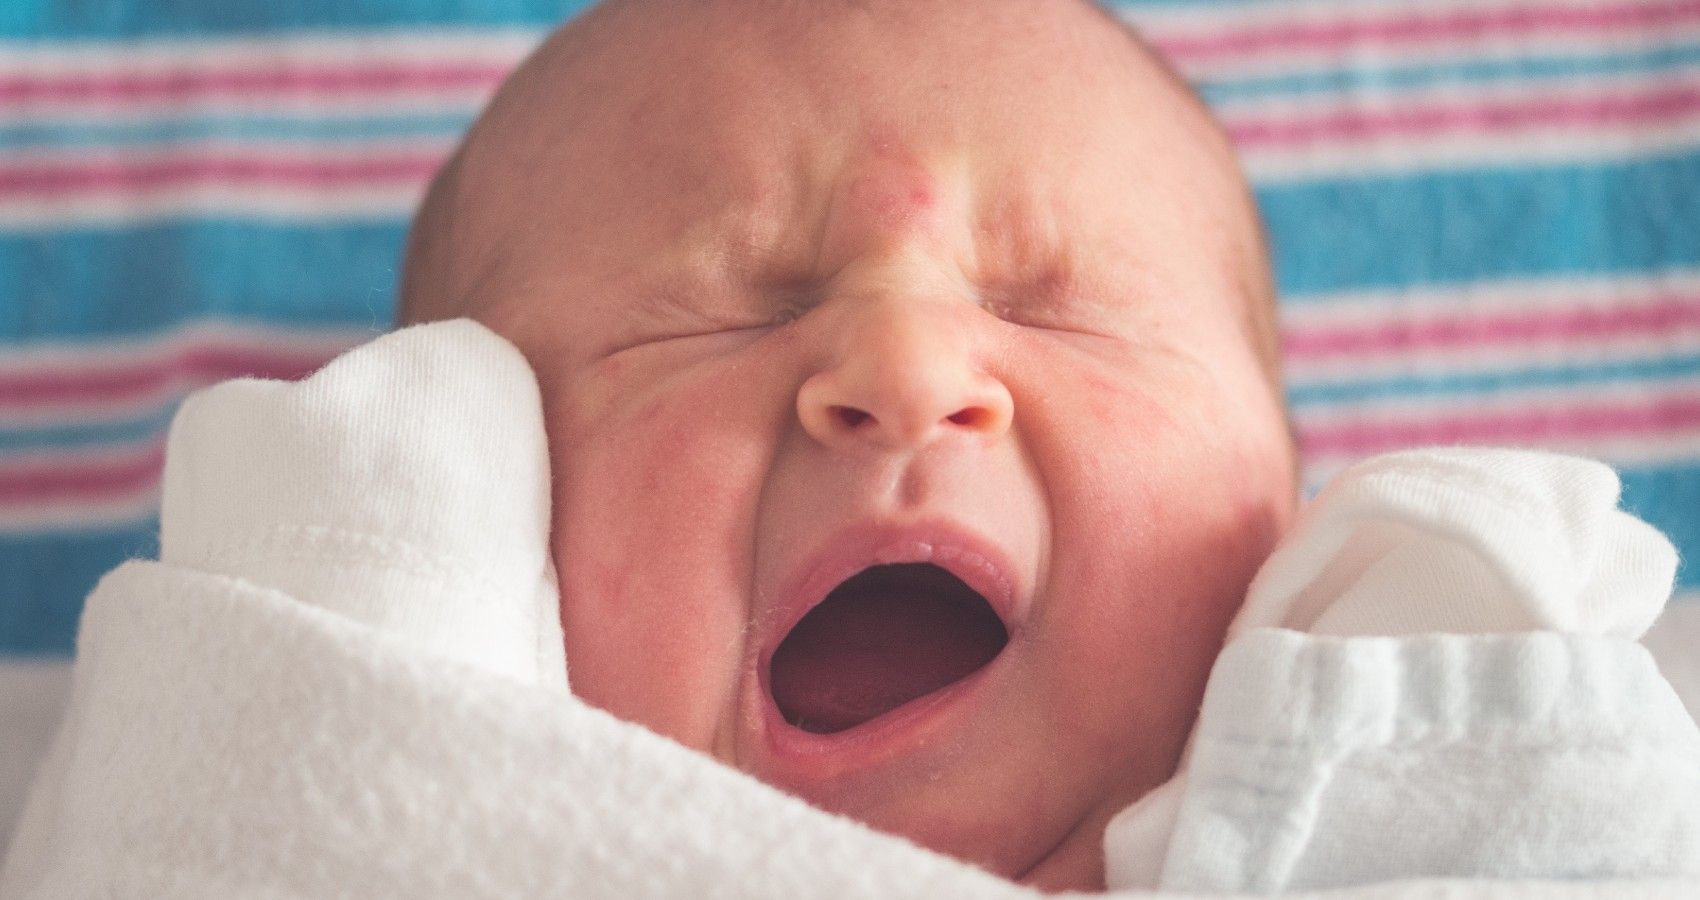 A small newborn baby yawning